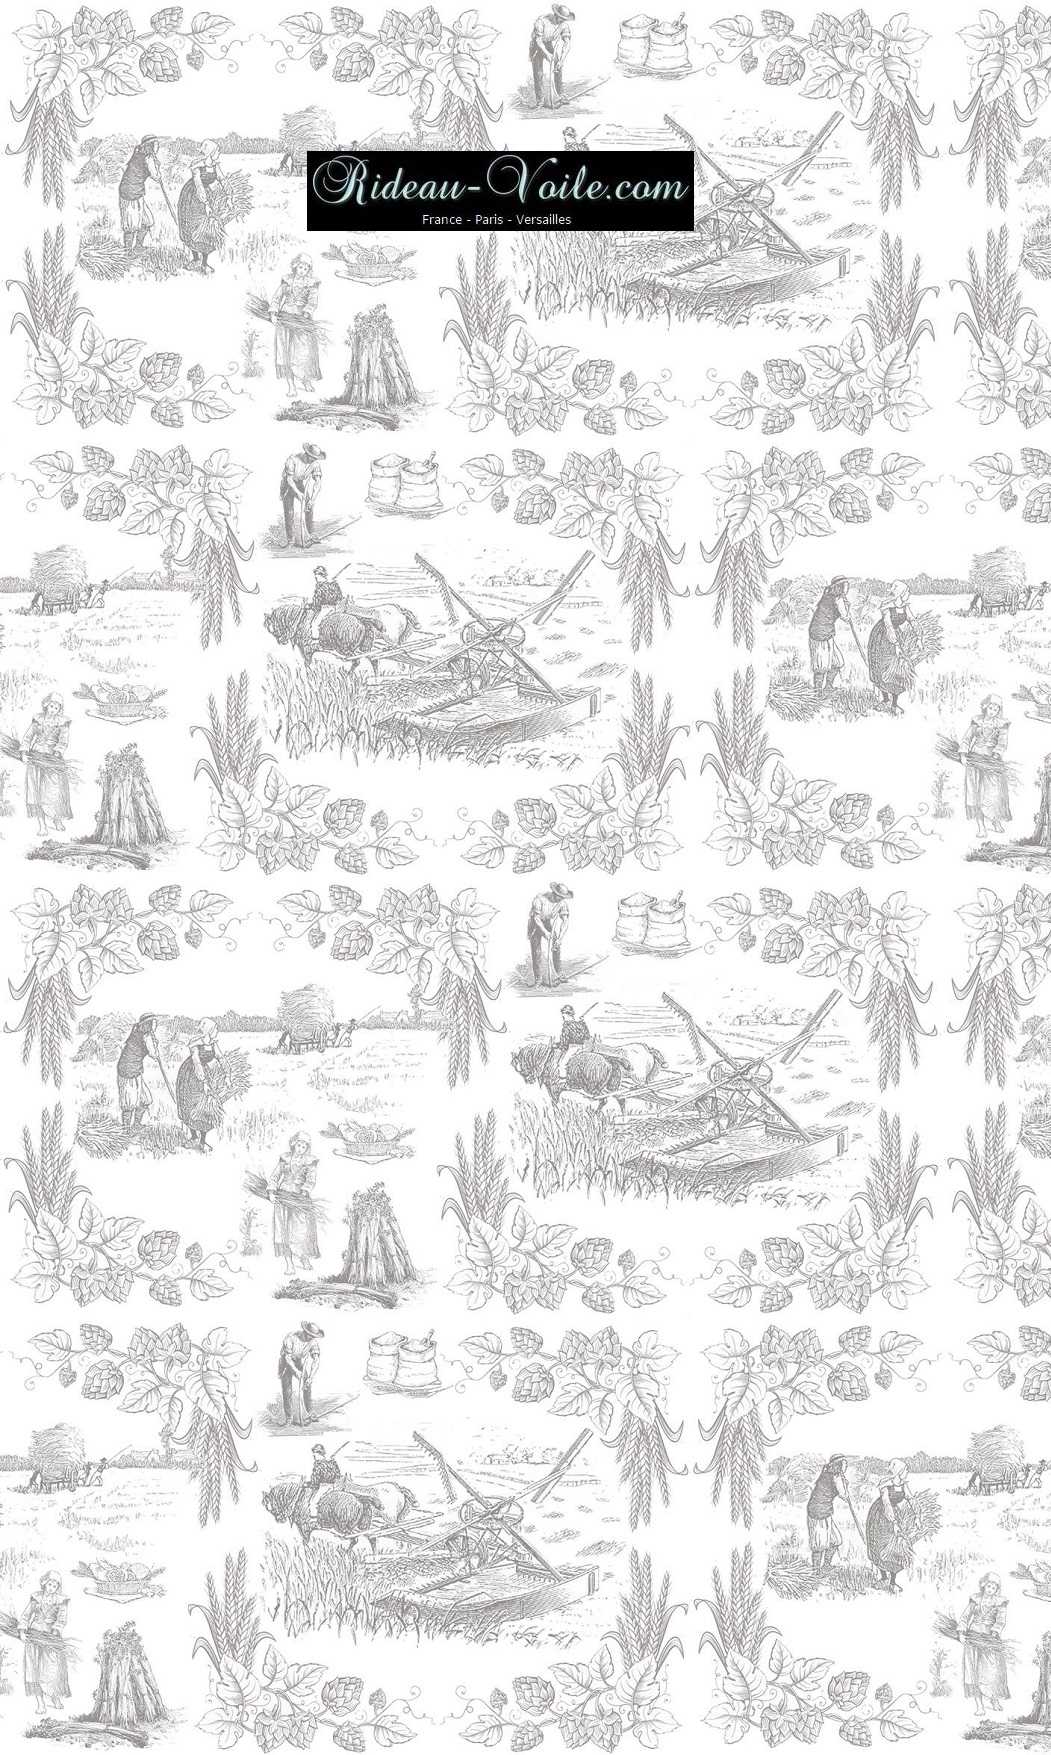 Toile de Jouy tissu au mètre ameublement textile Paris Versailles Yvelines decoration french pattern haut gamme gris